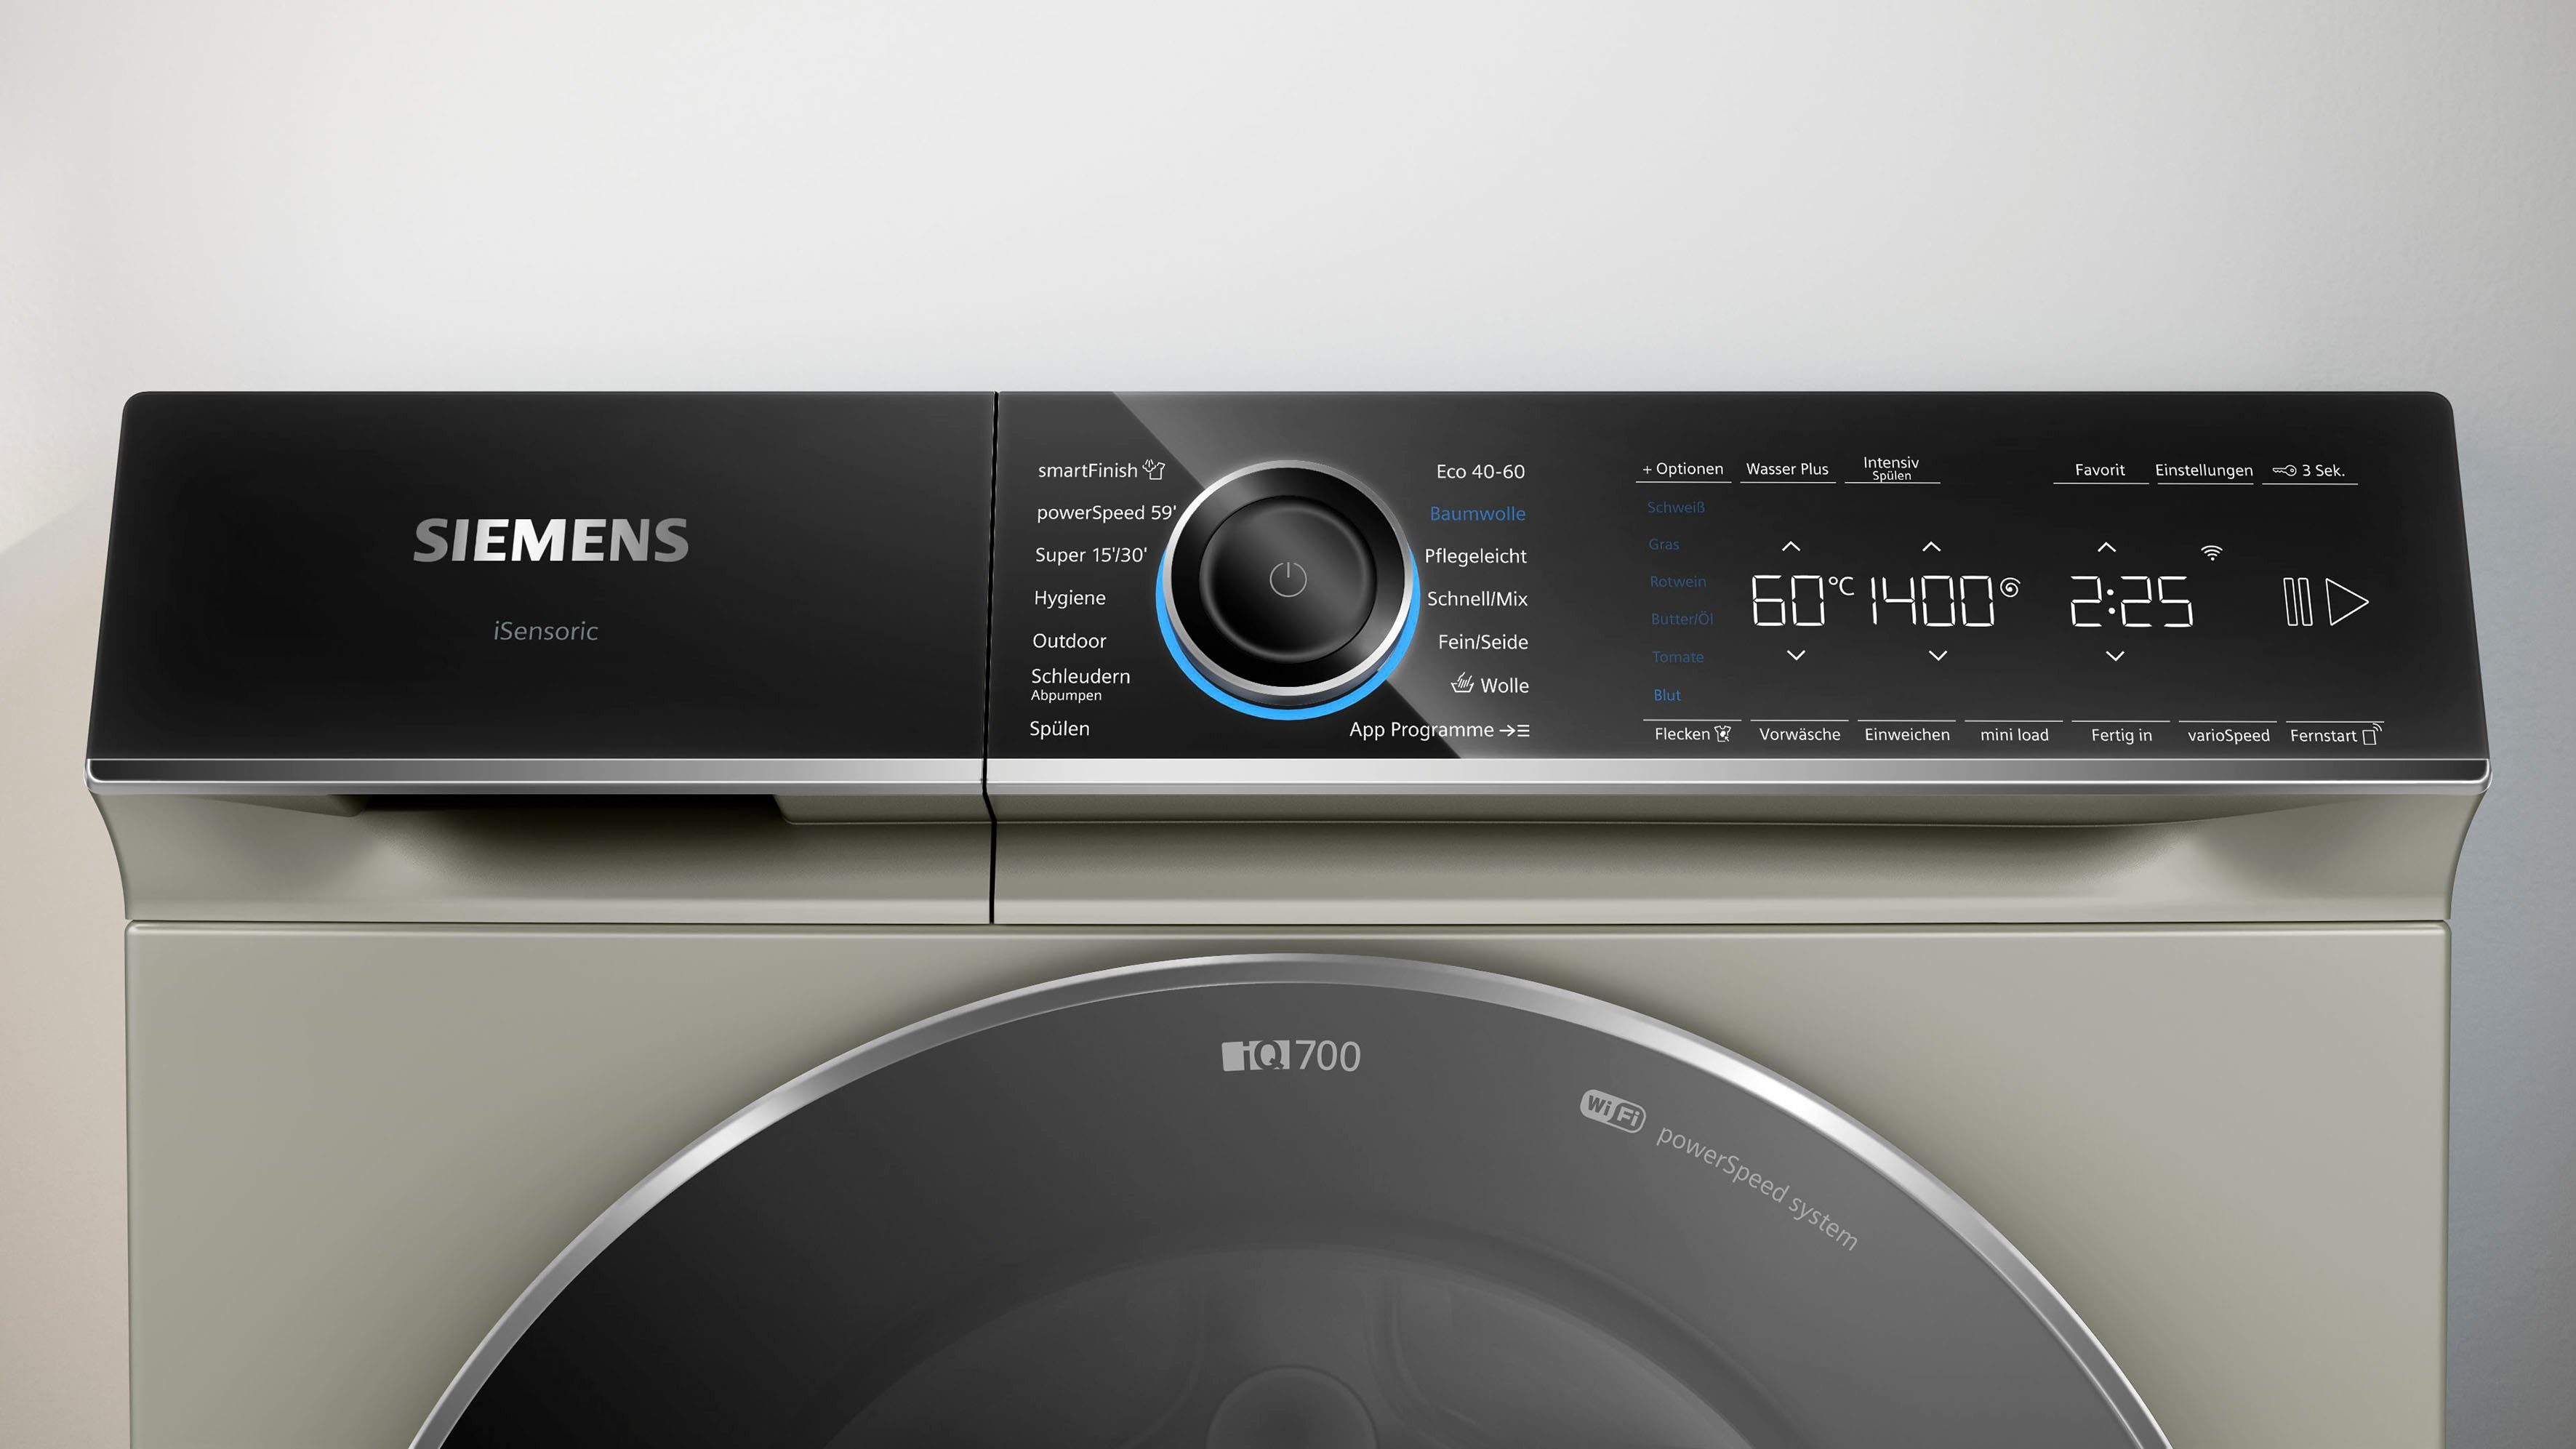 SIEMENS Waschmaschine WG44B20X40, – smartFinish dank kg, Knitterfalten glättet sämtliche 9 Dampf U/min, 1400